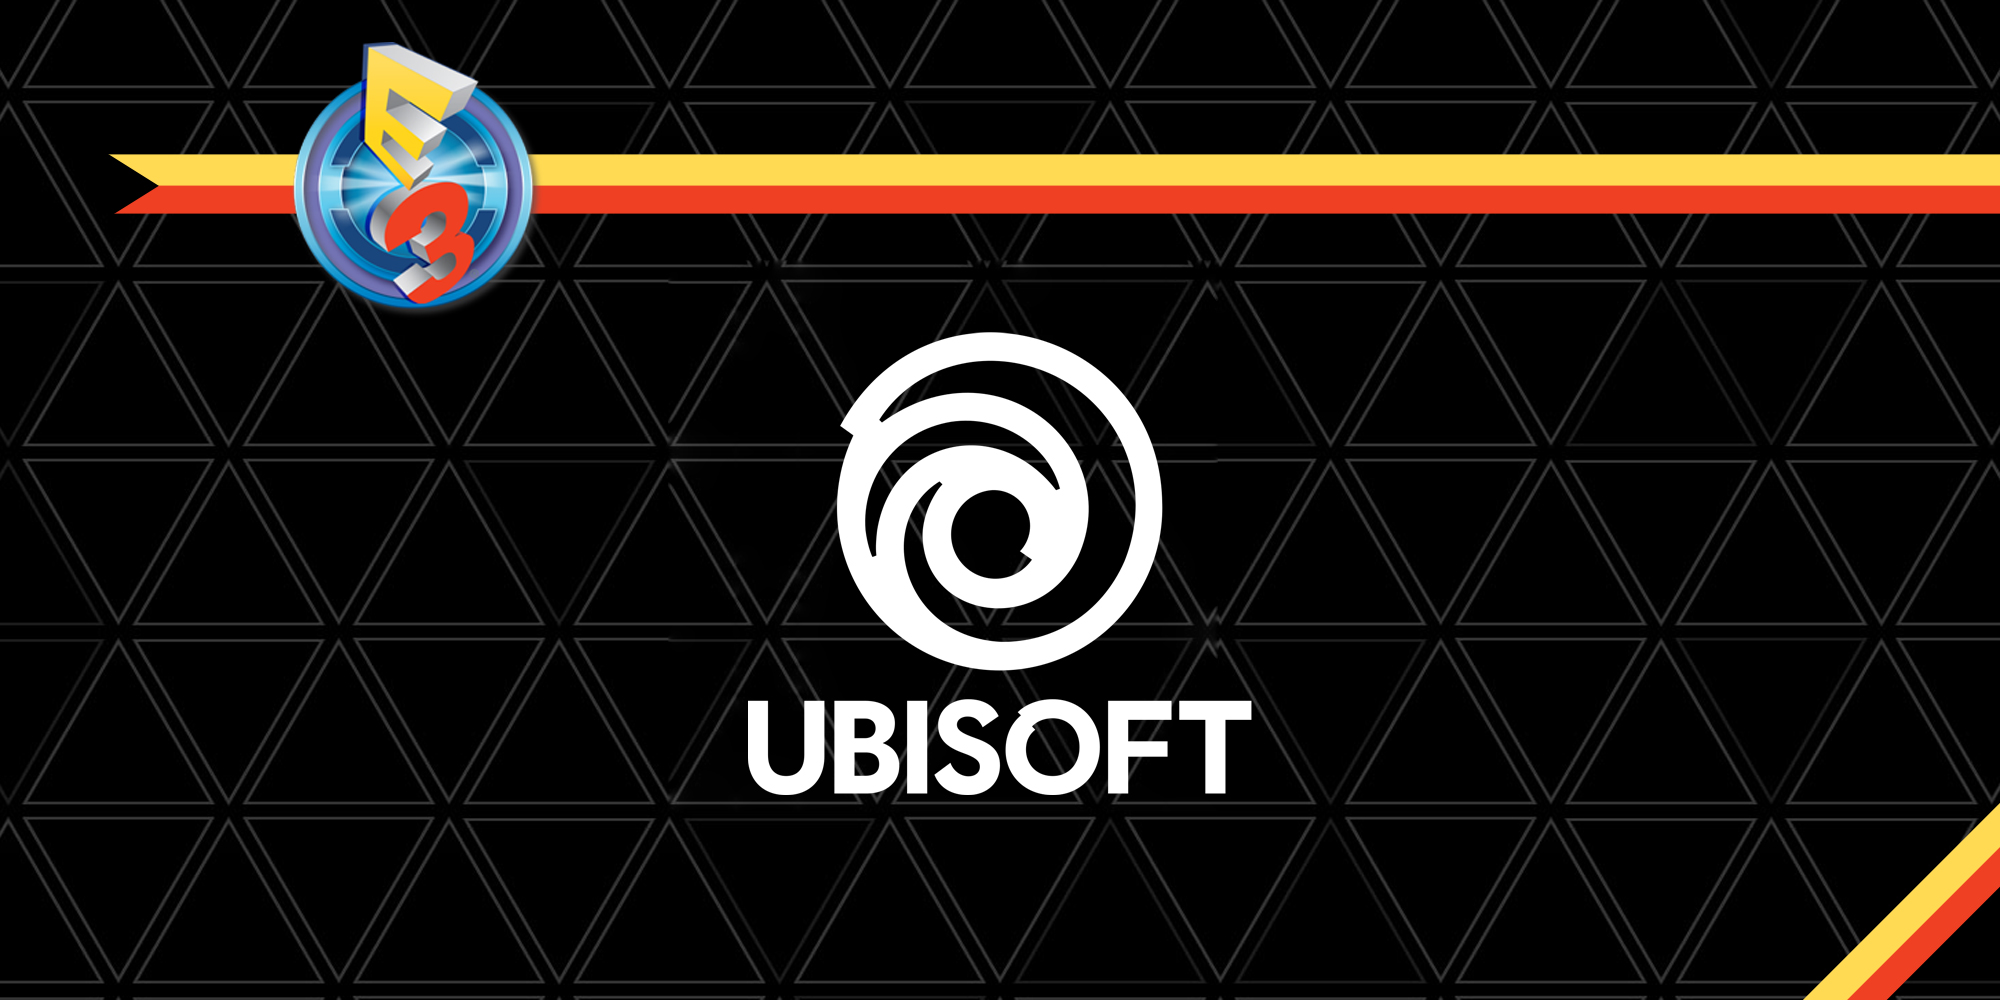  [E3 2017] Découvrez les annonces Ubisoft